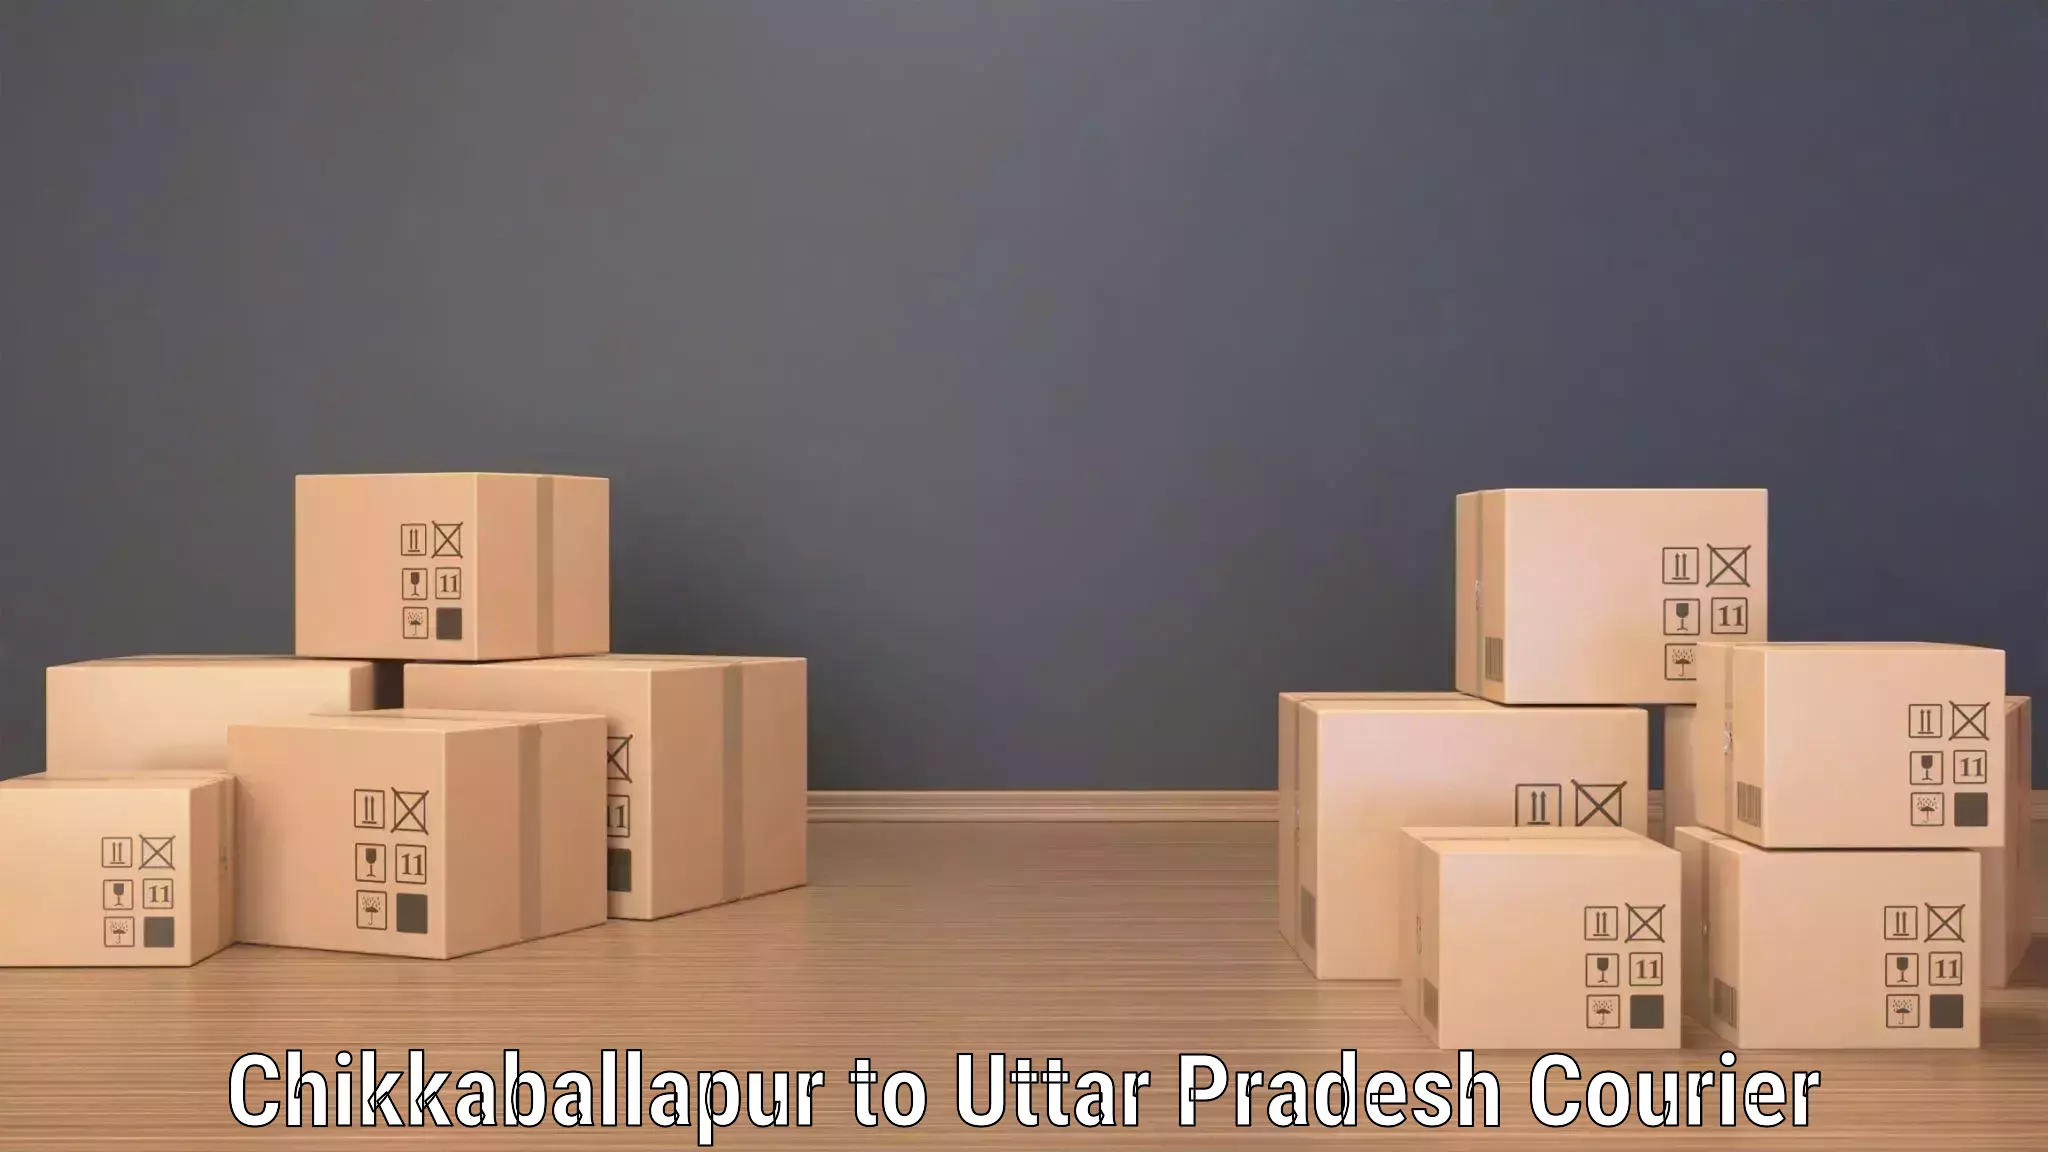 High-speed parcel service Chikkaballapur to Nariwari